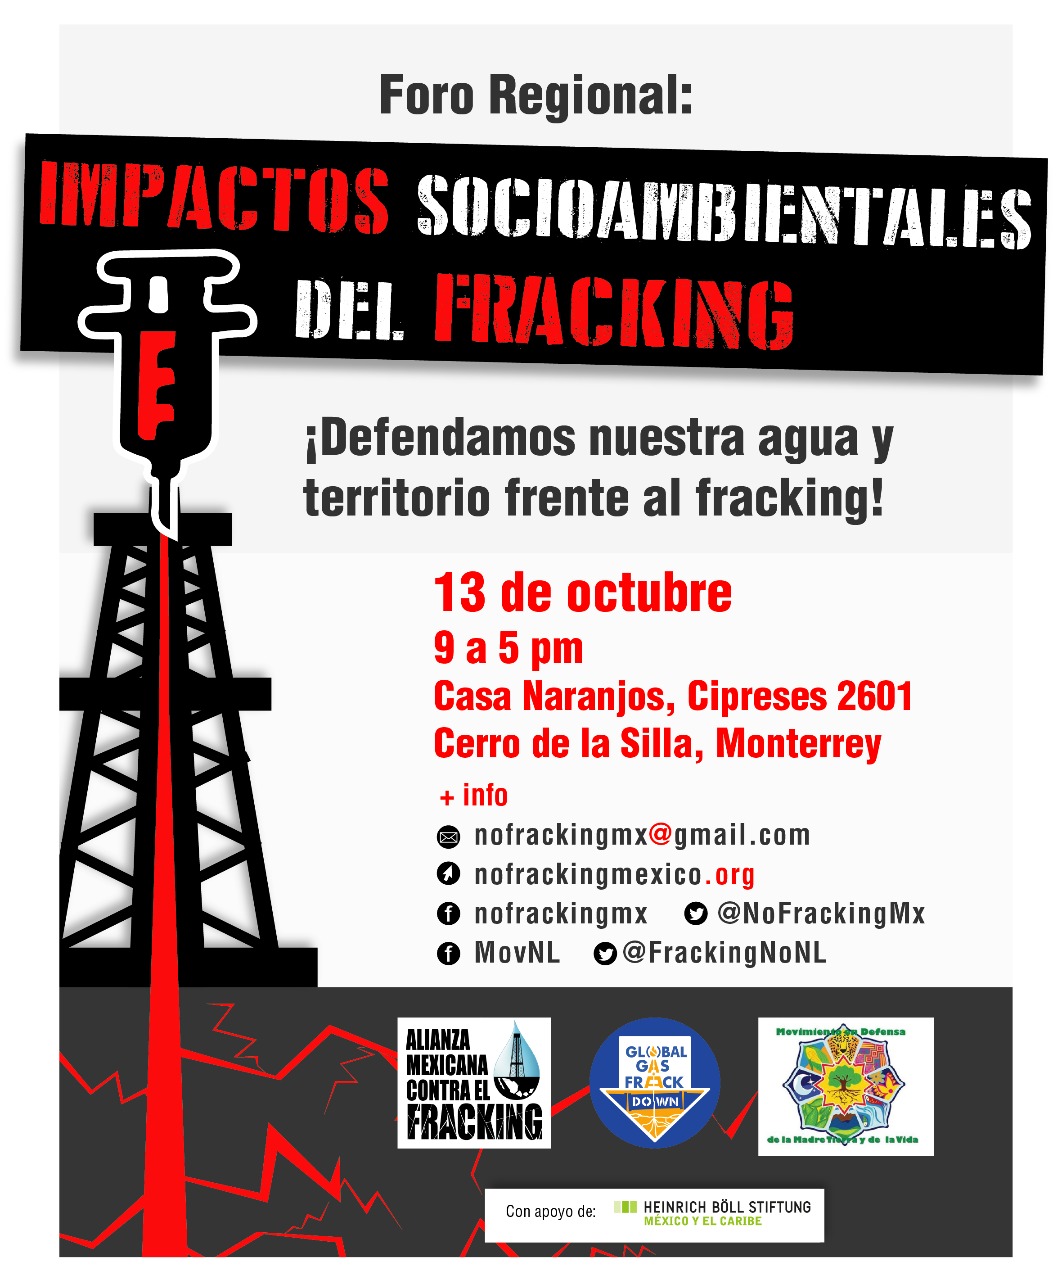 Foro Regional: Impactos socioambientales del fracking